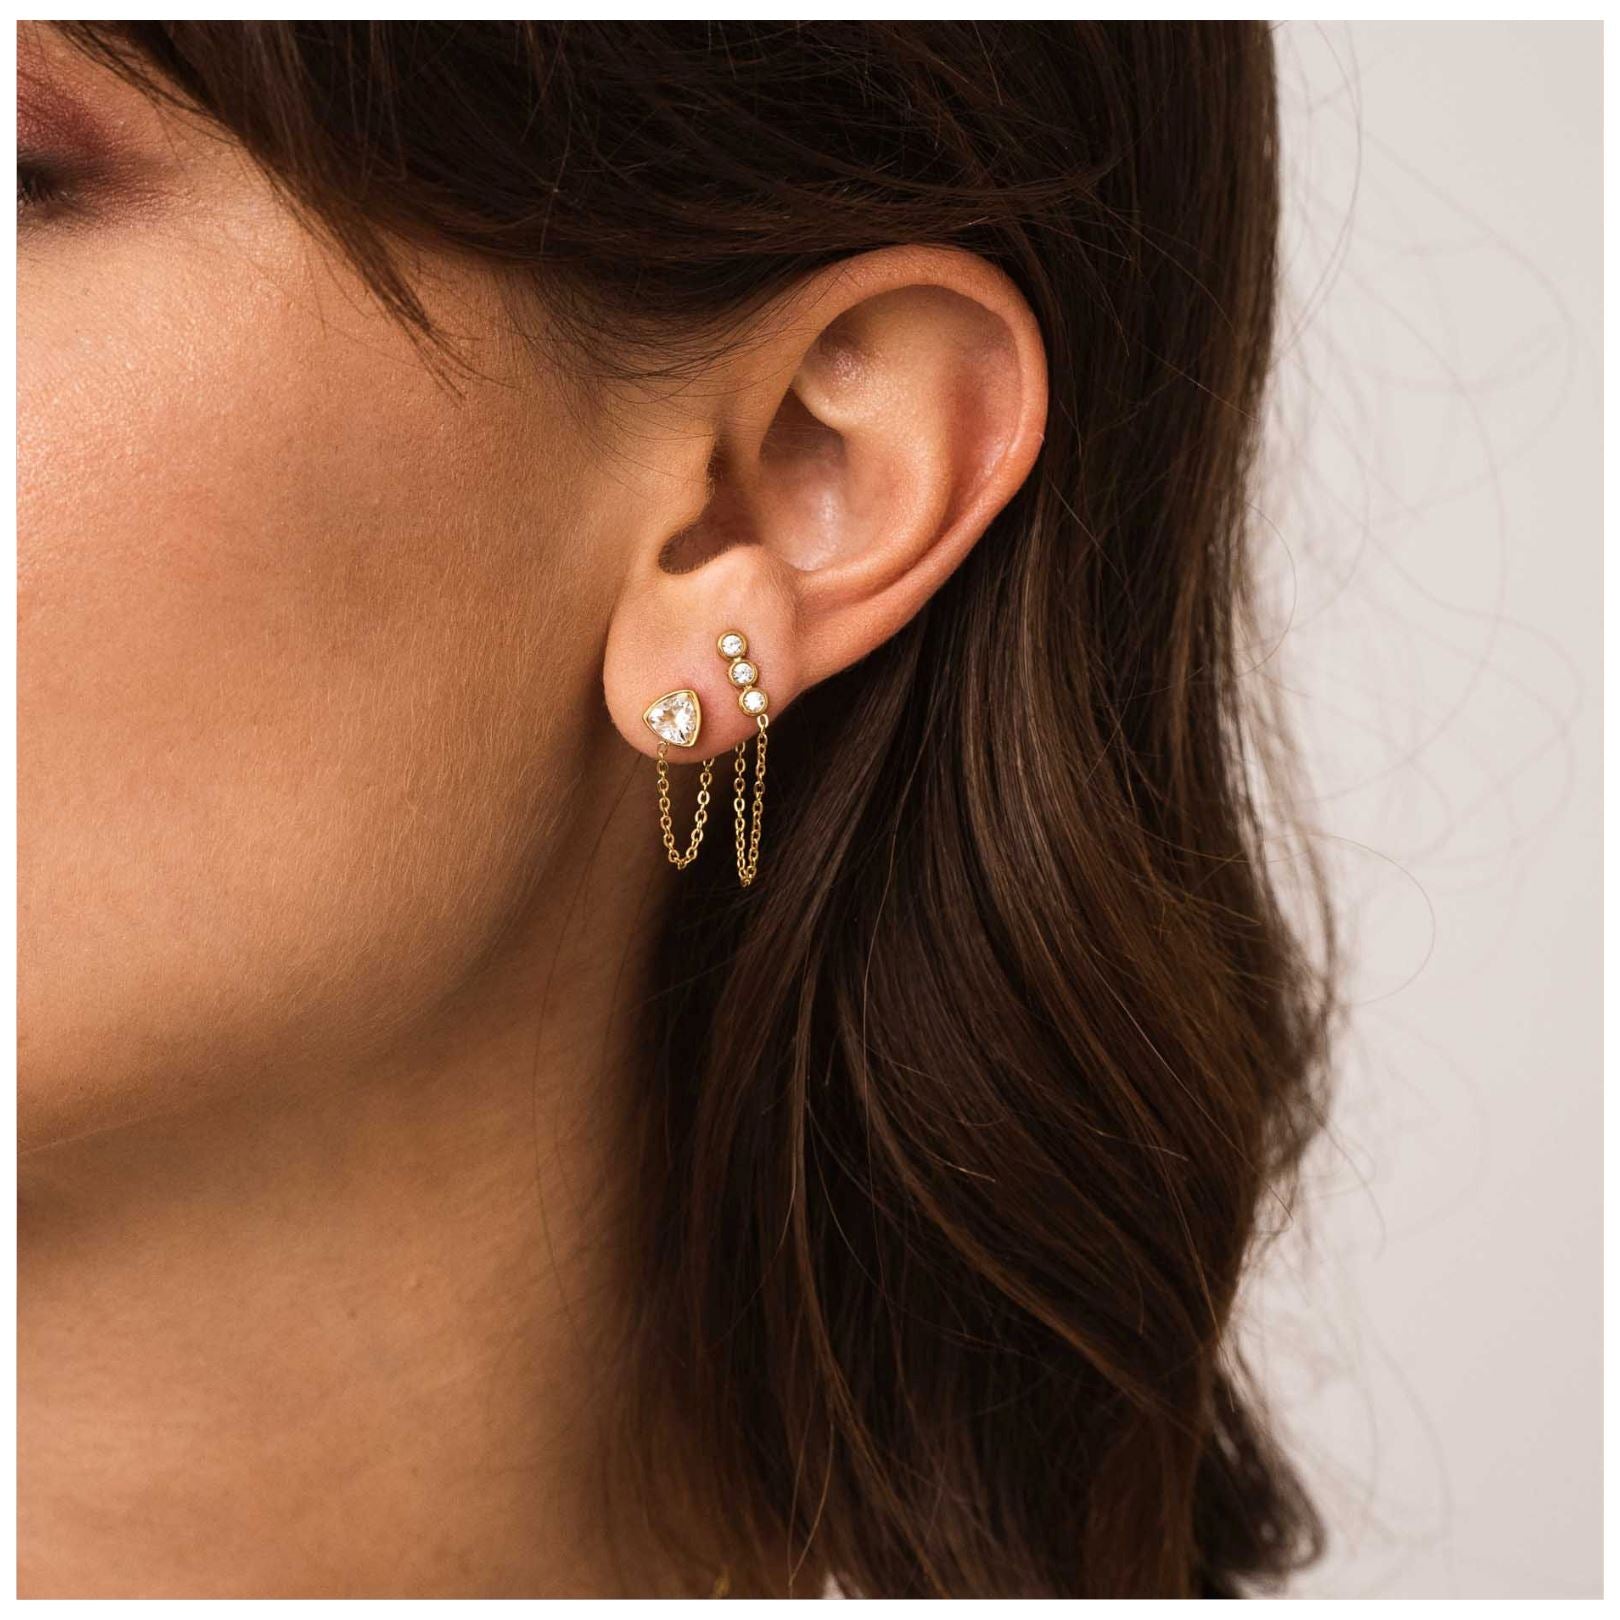 Mini earrings